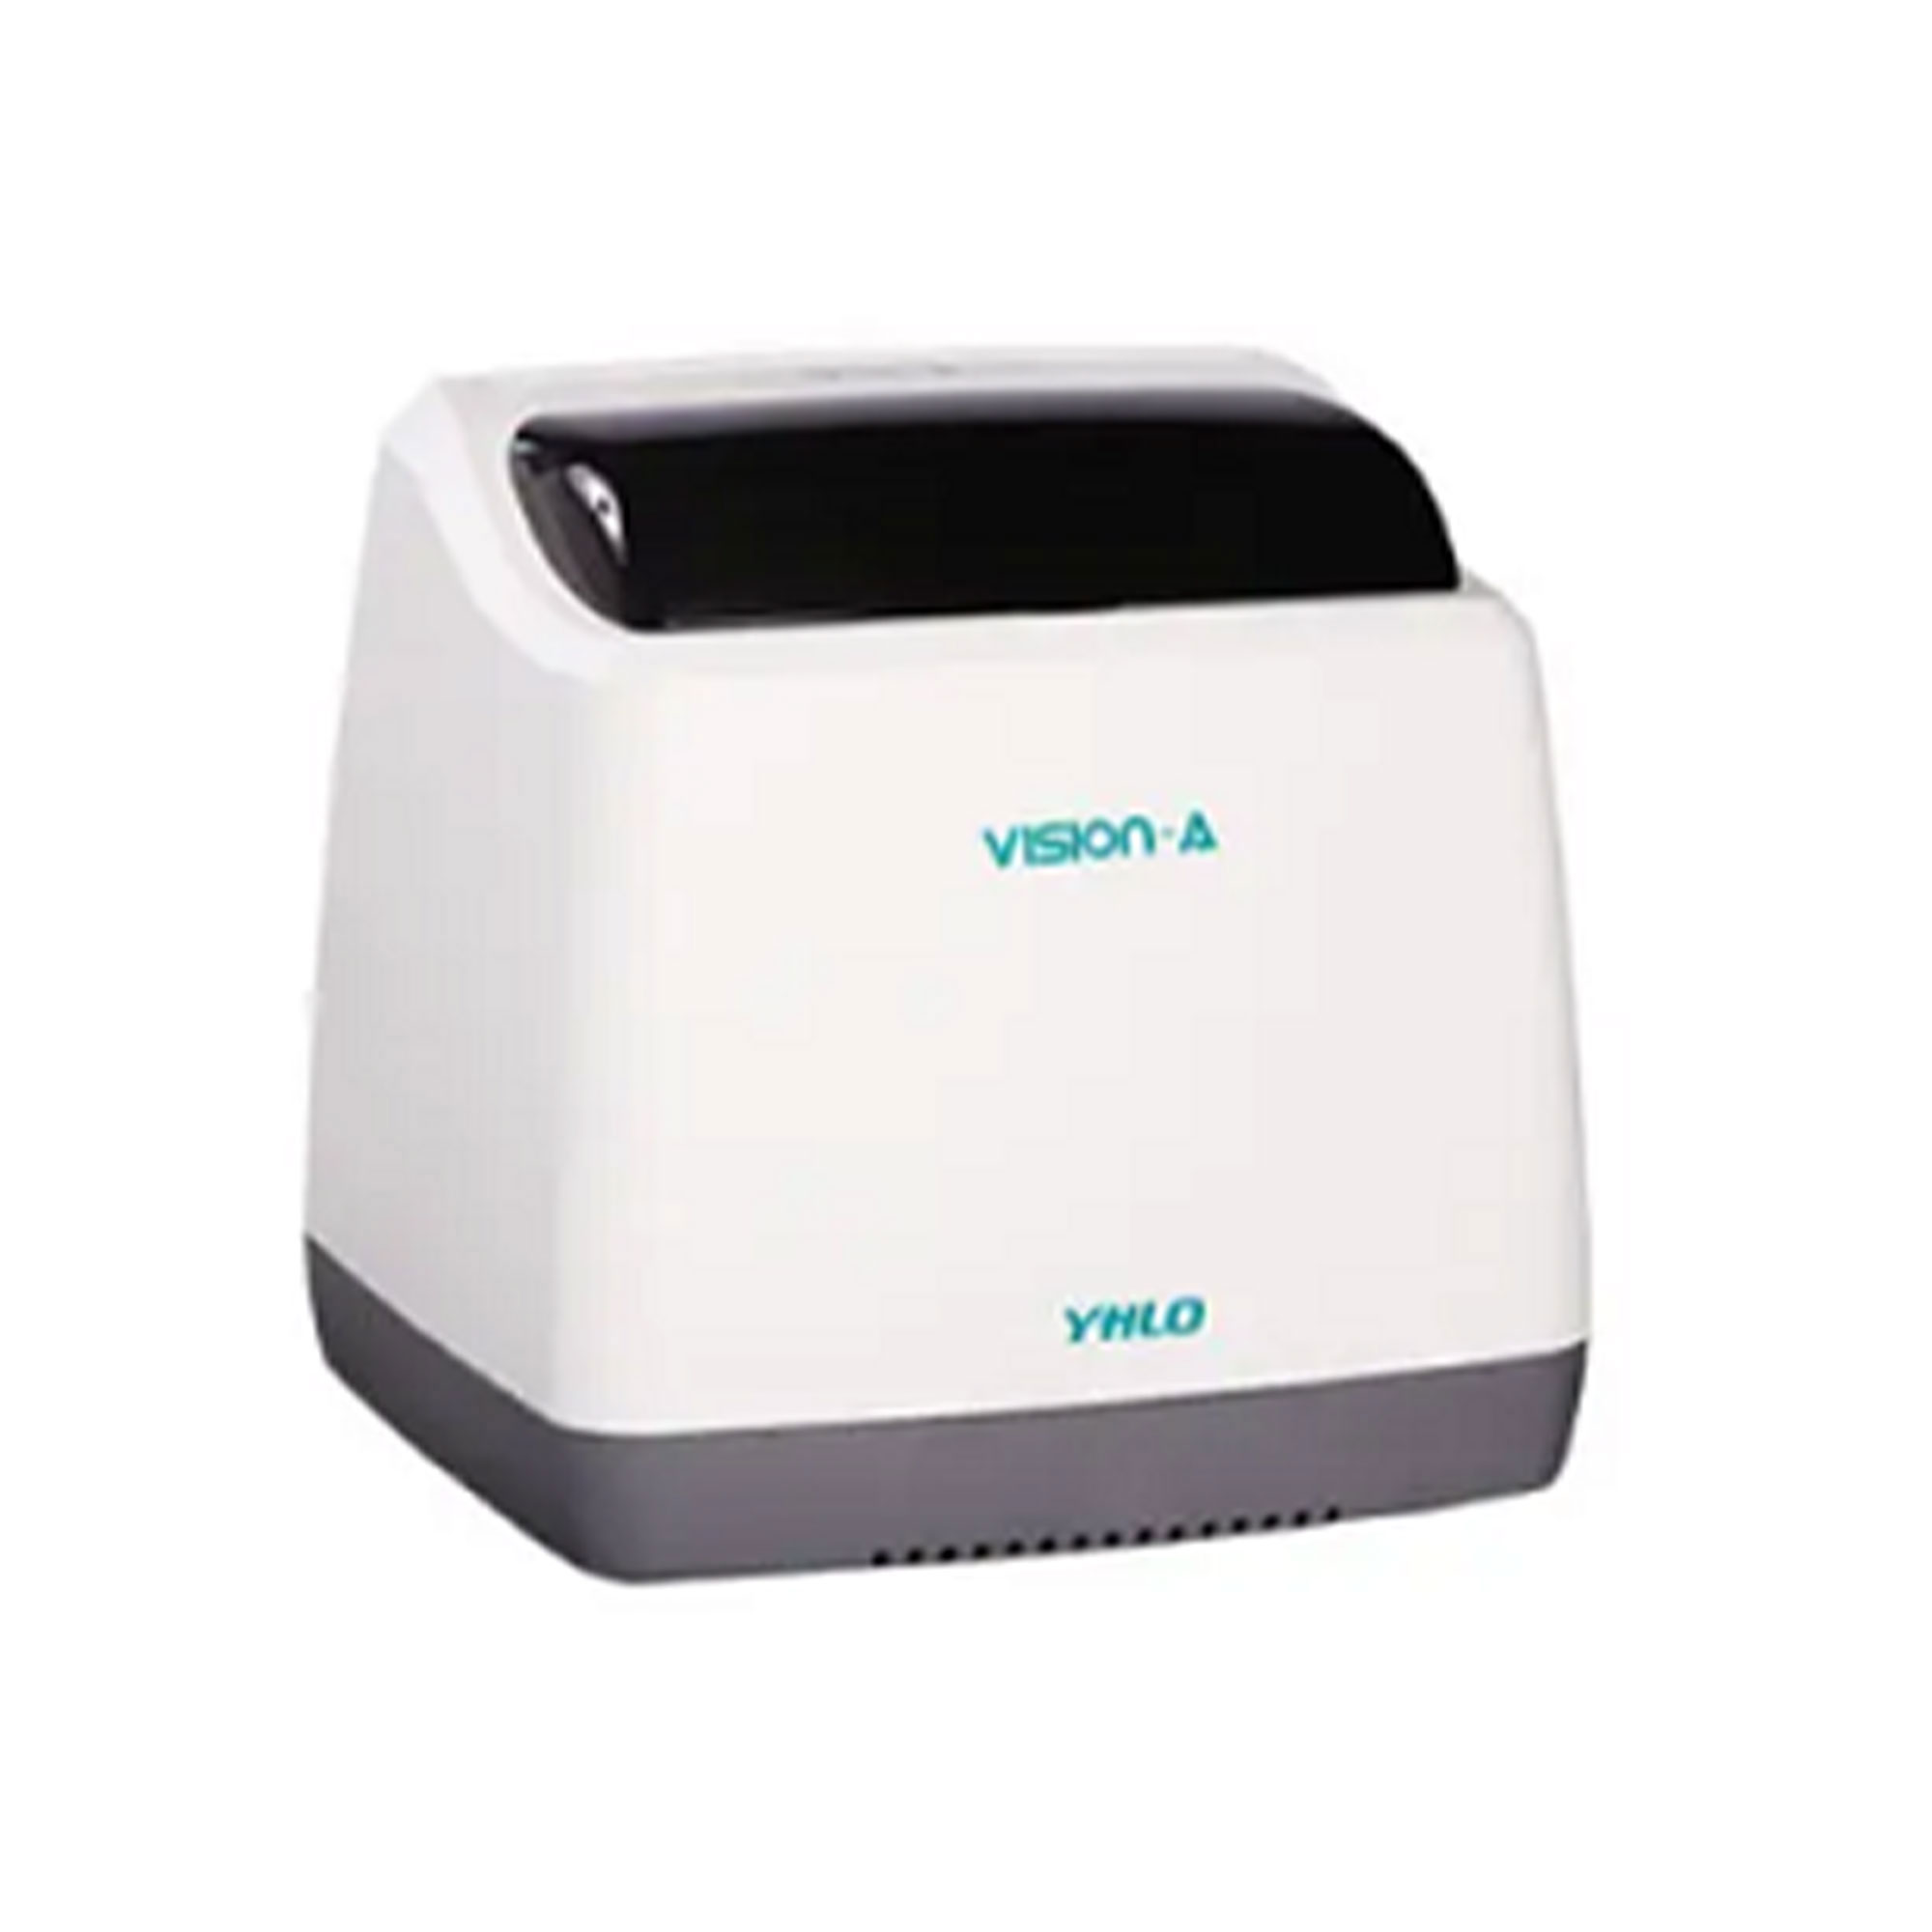 سدیمان آنالایزر 16خانه - Vision ESR Analyzer16 - YHLO - دستگاه - هماتولوژی و بانک خون - گروه آزمایشگاهی پادینا ویستا